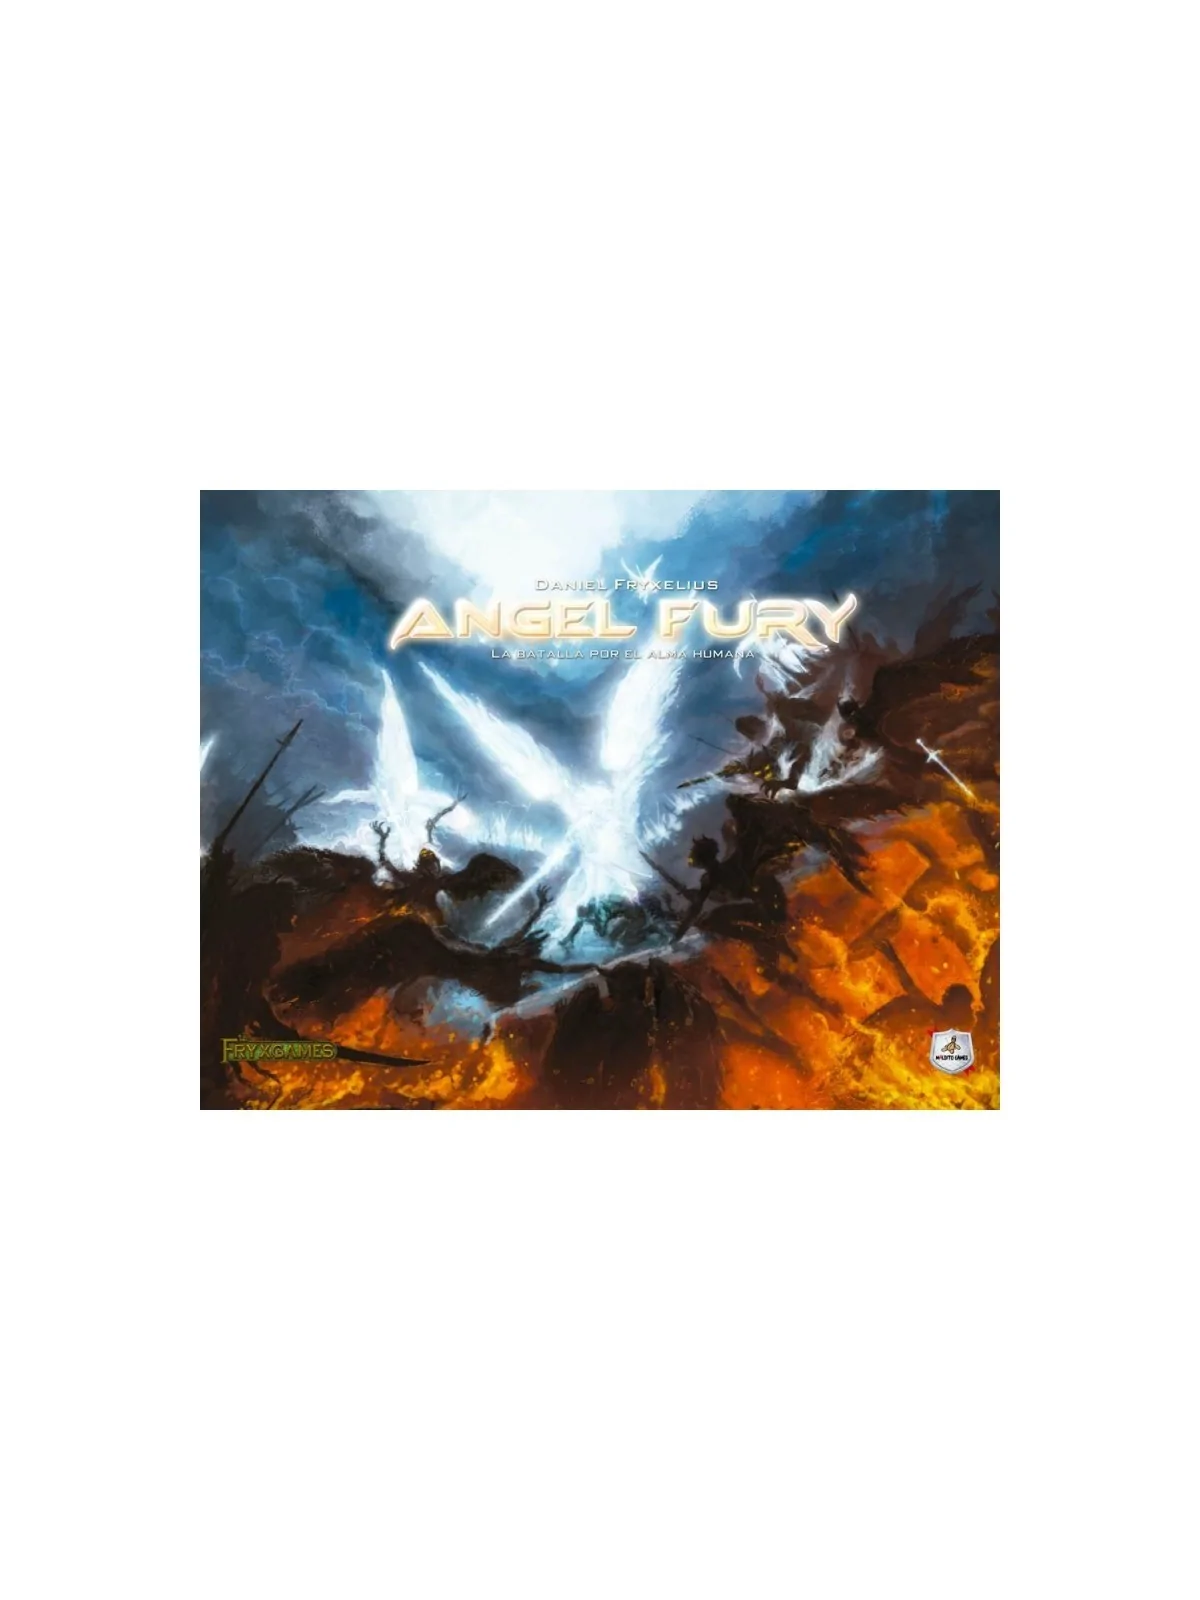 Comprar Angel Fury barato al mejor precio 108,00 € de Maldito Games